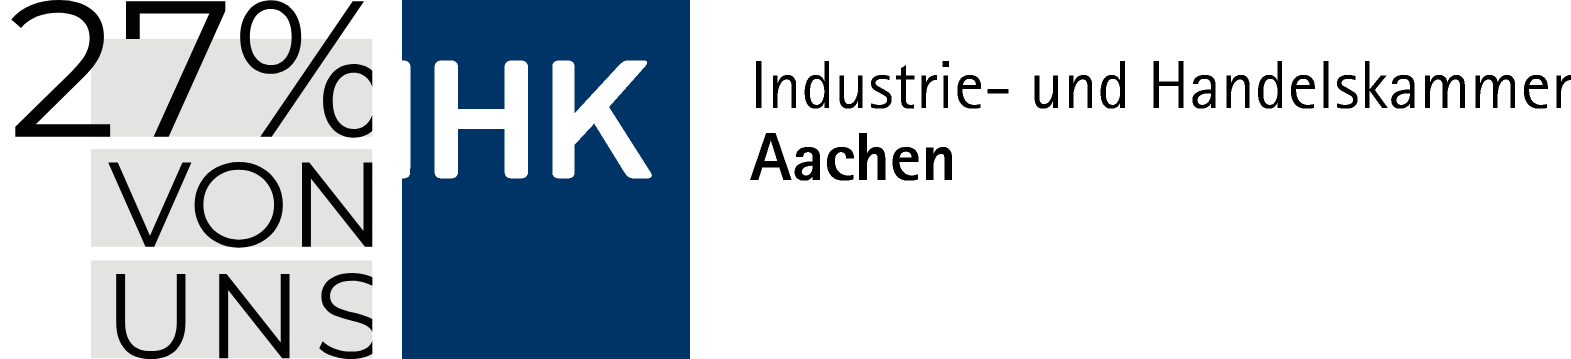 Standort Region Aachen